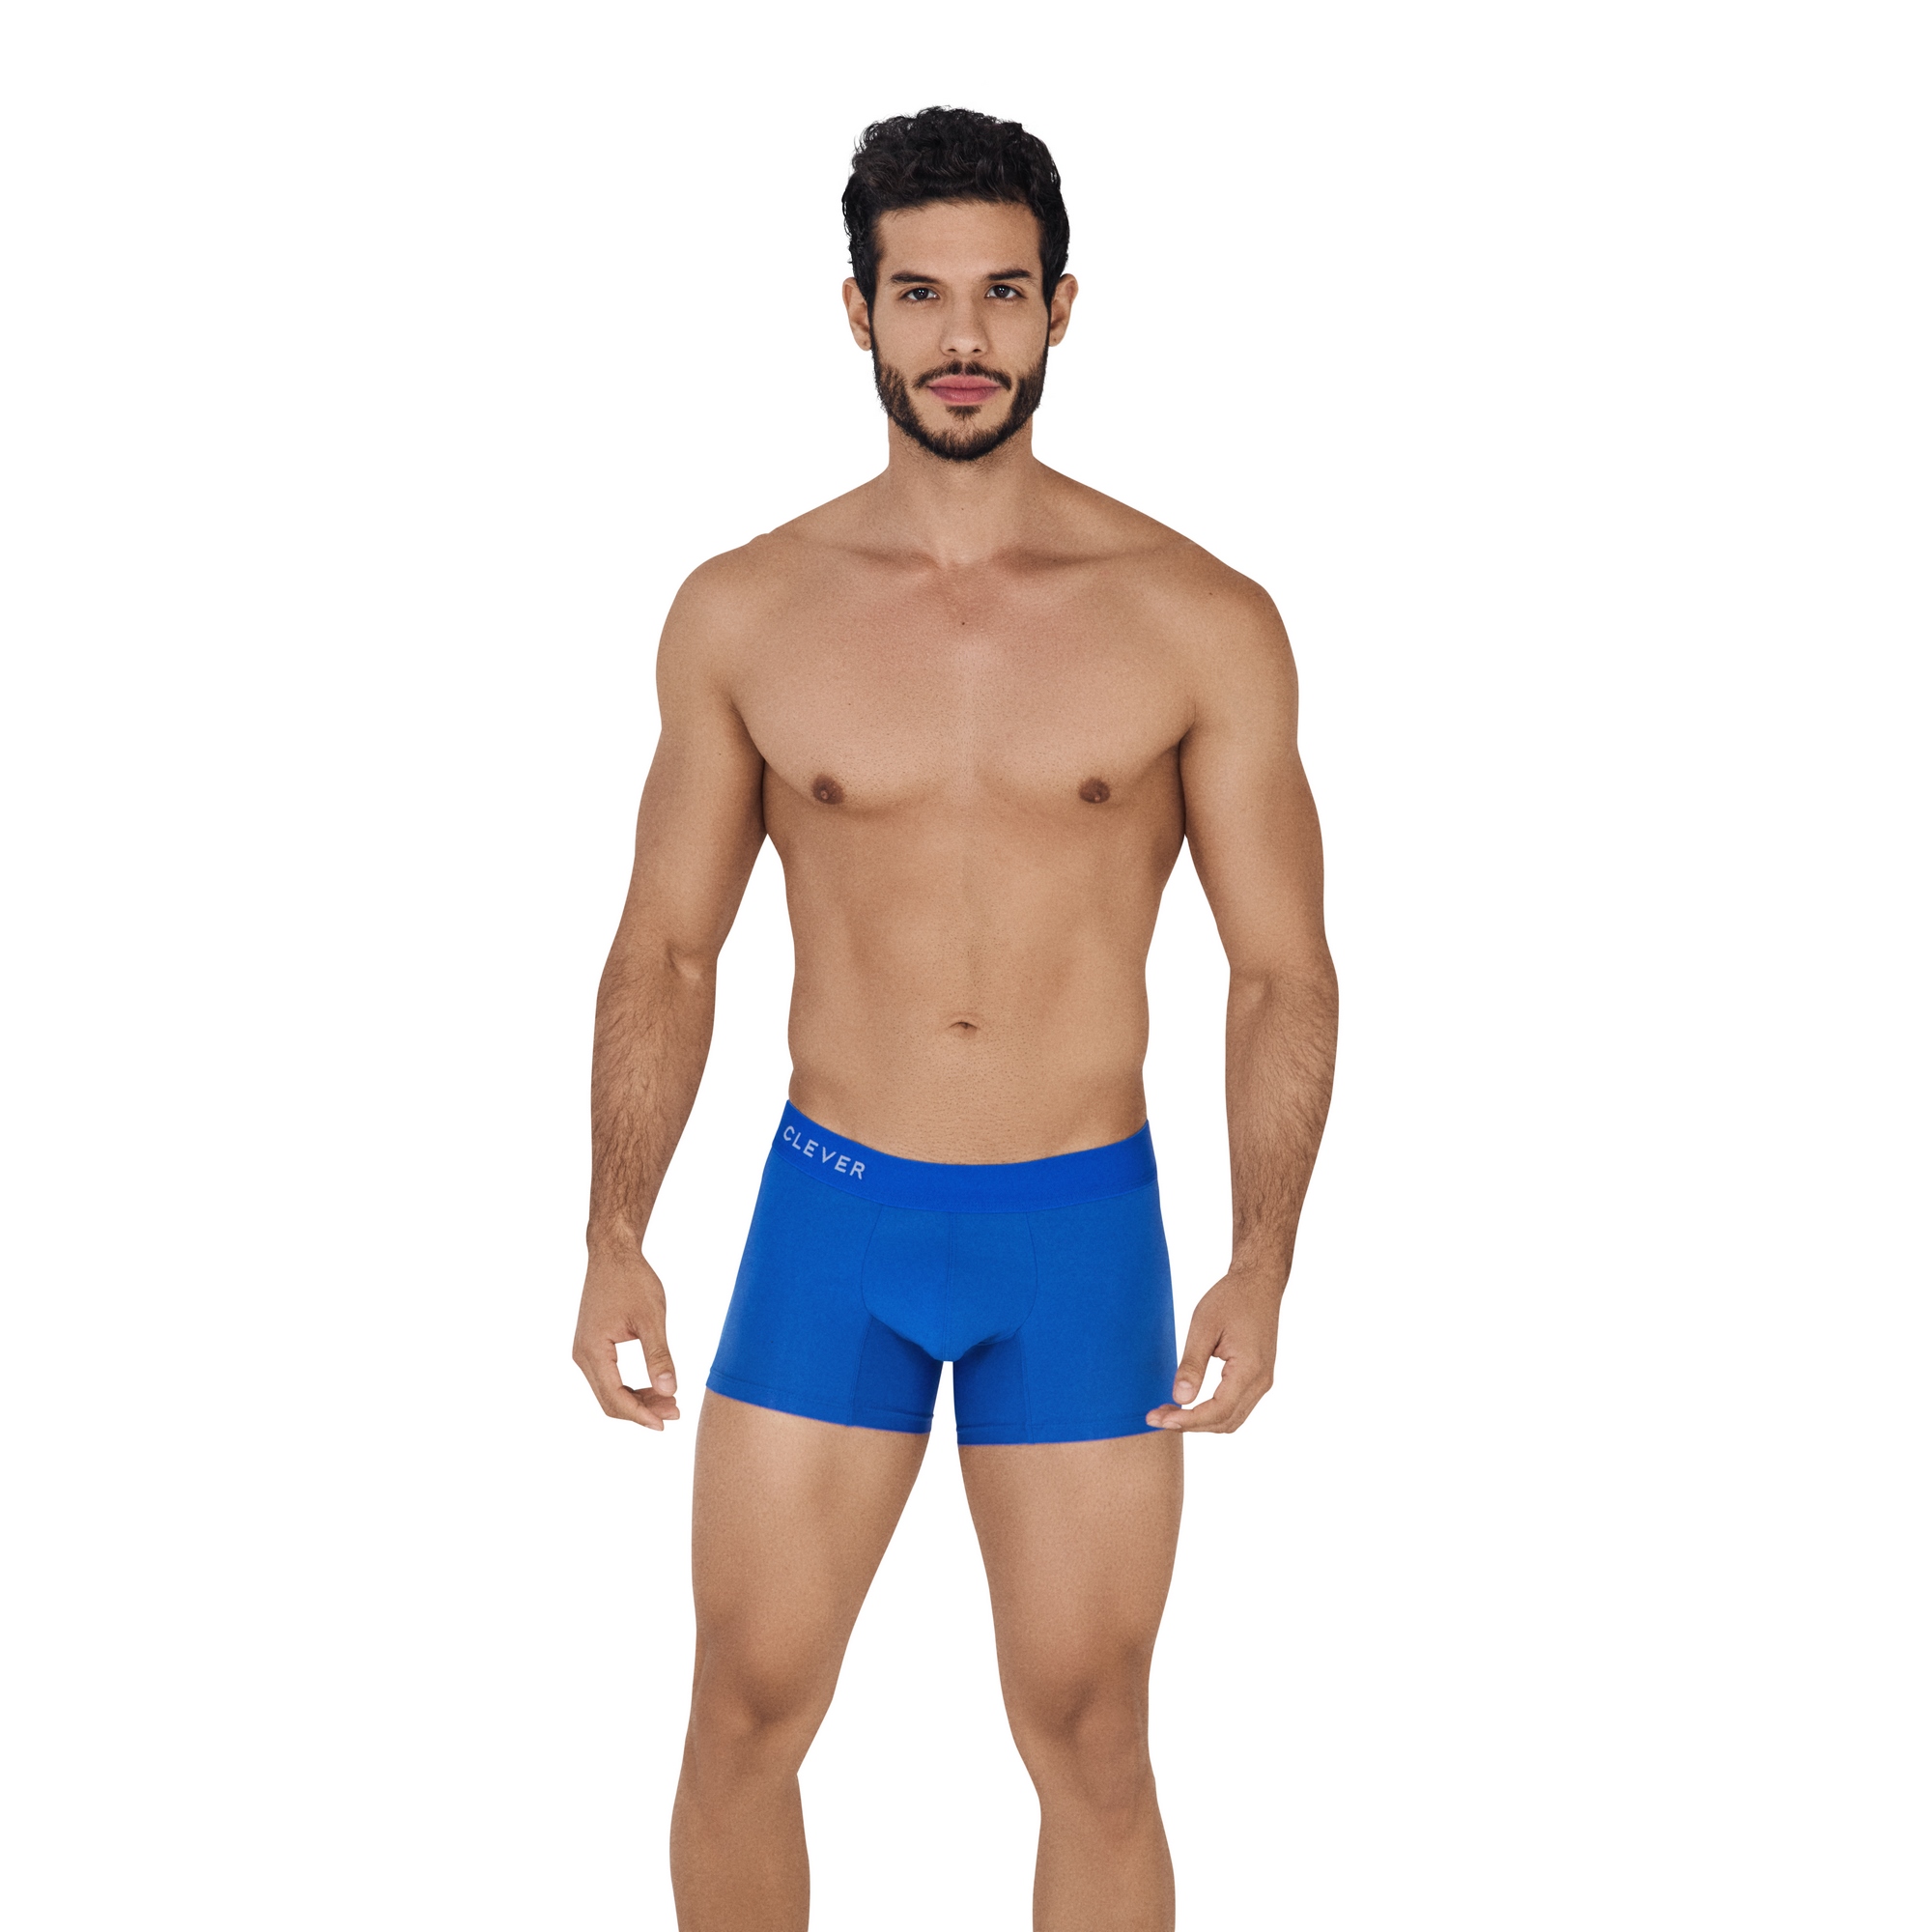 Трусы мужские Clever Masculine Underwear 0532 синие XL